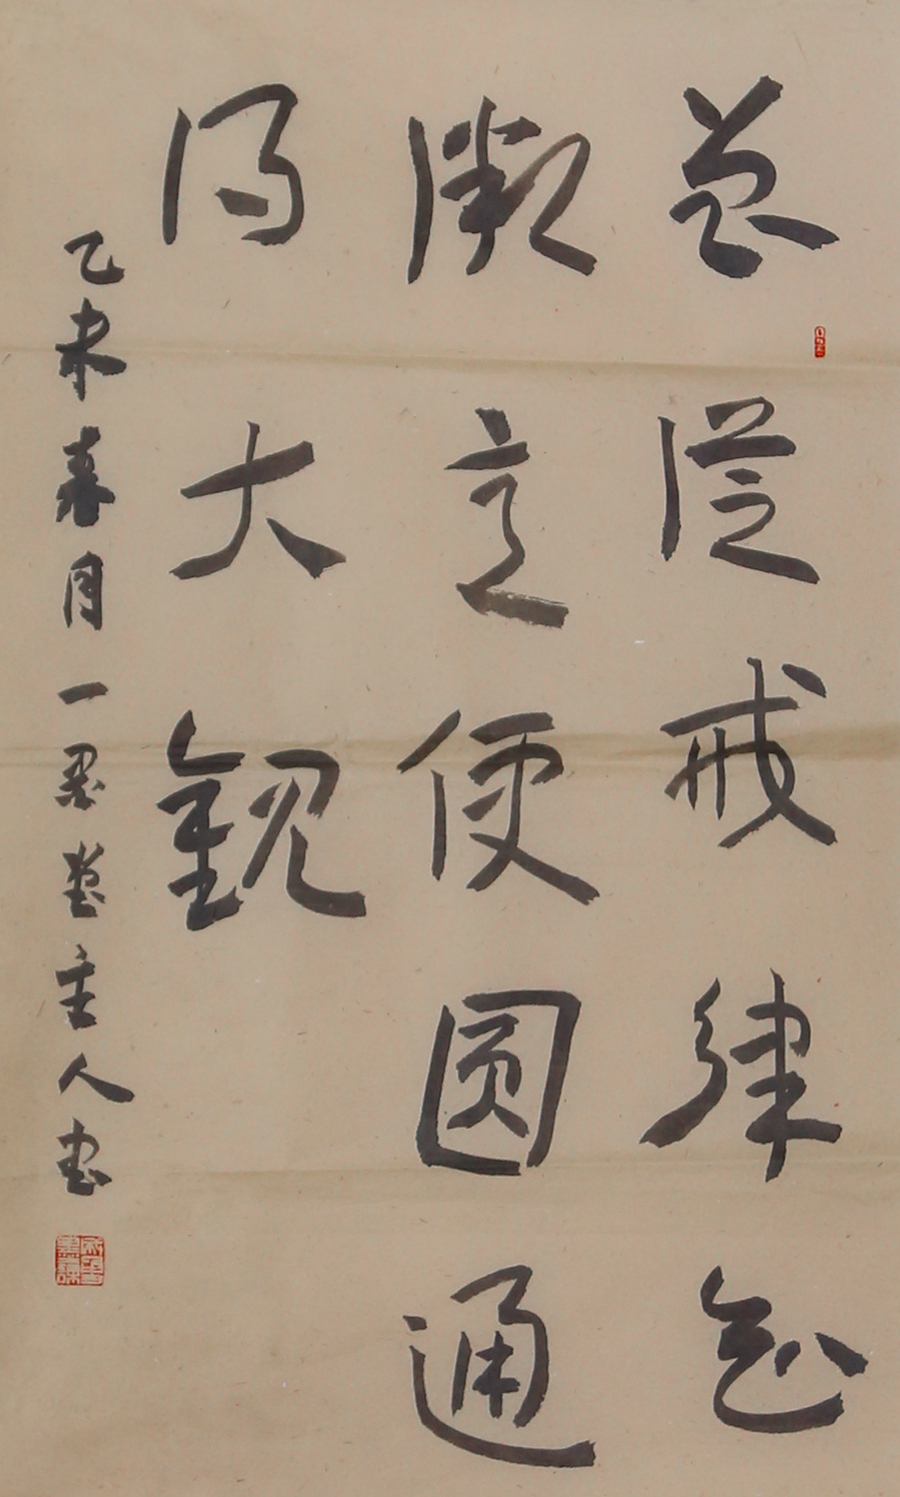 Cursive script of Ji Jiu Zhang style